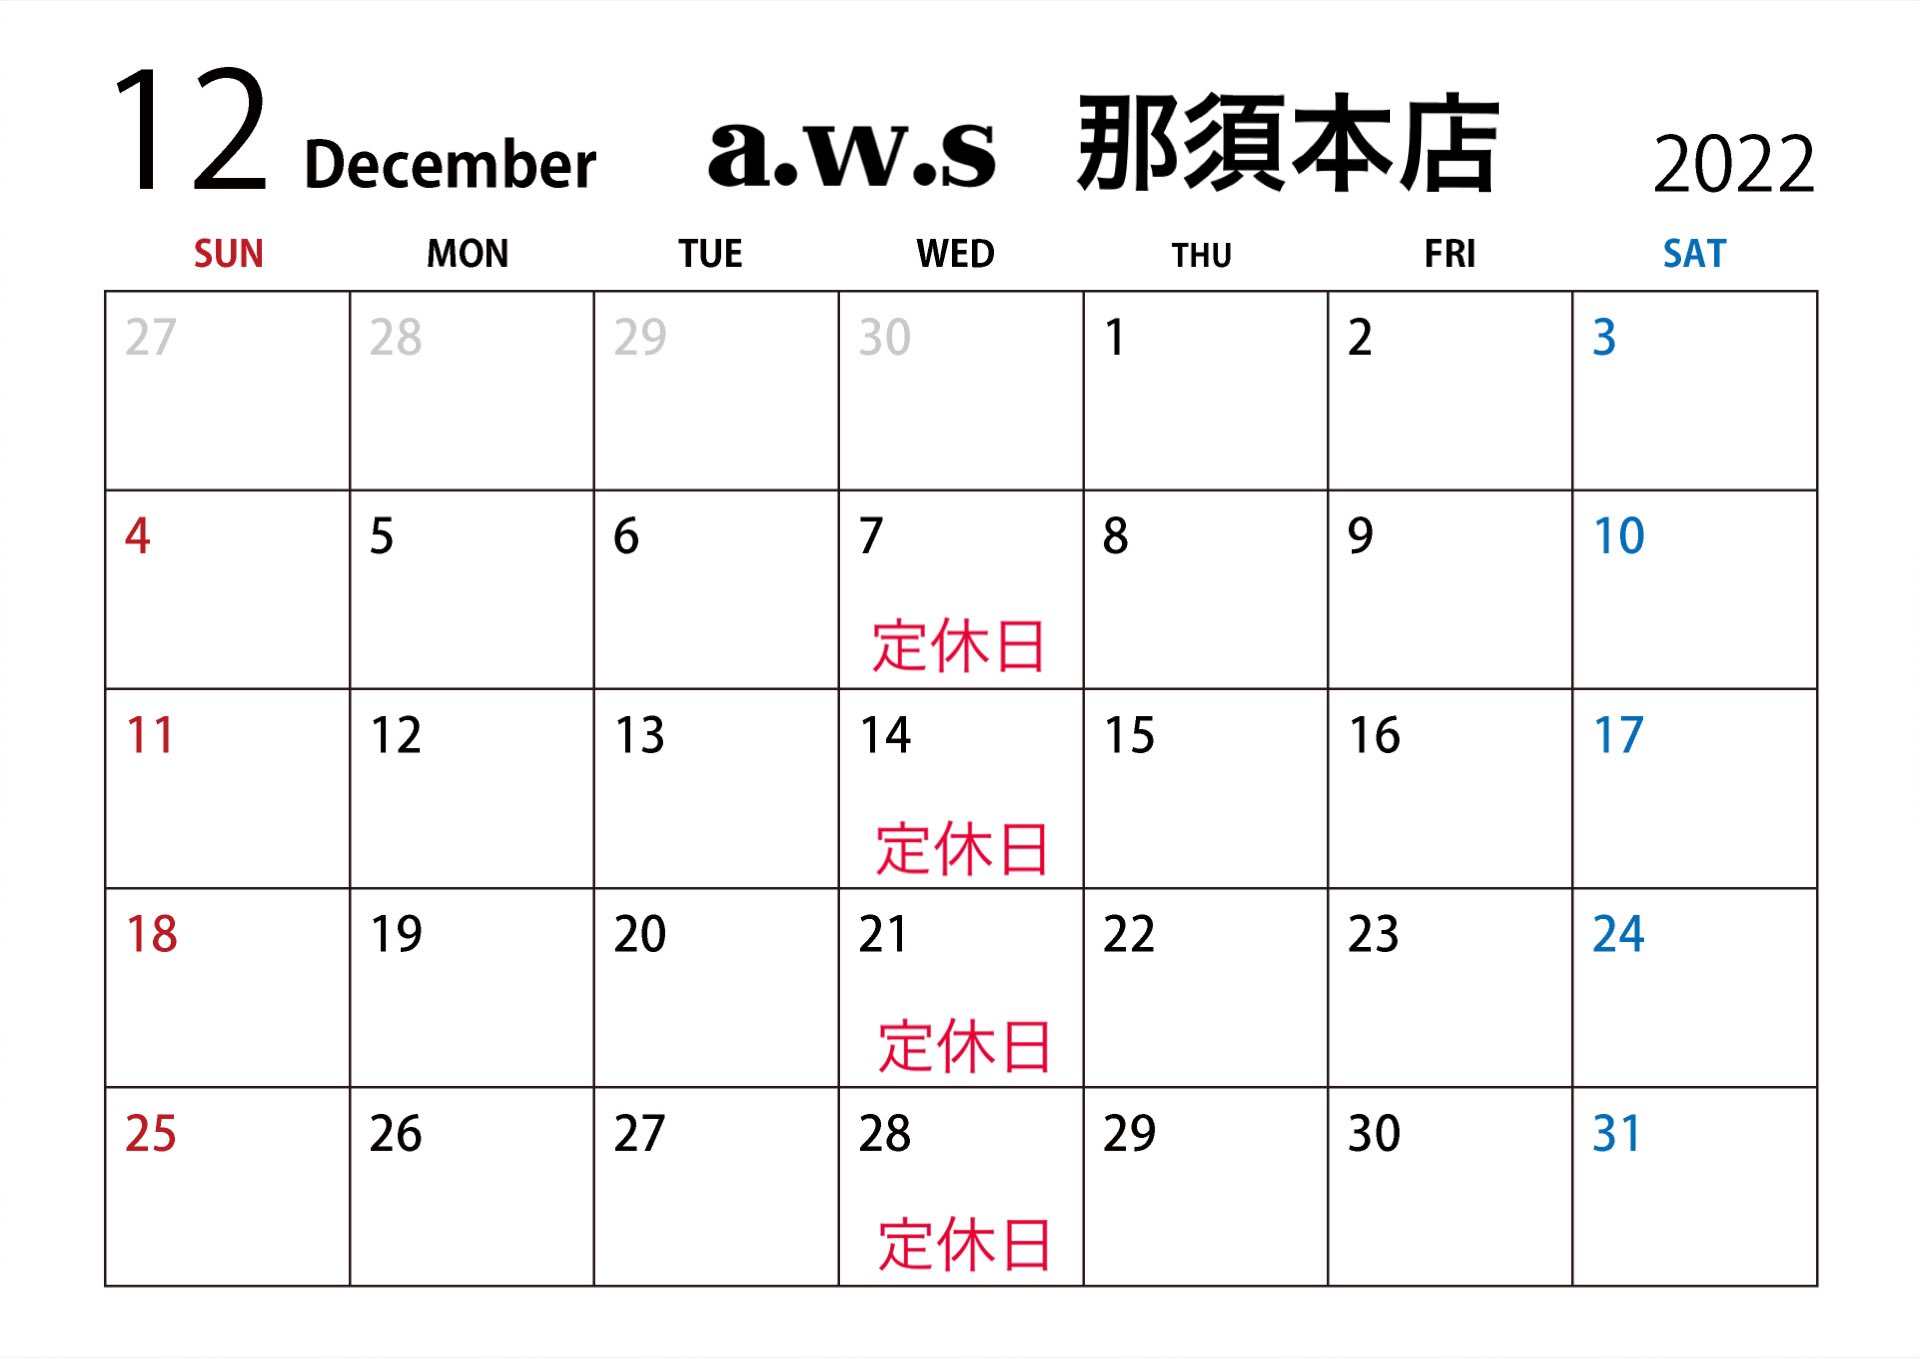 指輪作りの体験工房a.w.s那須本店12月のカレンダー